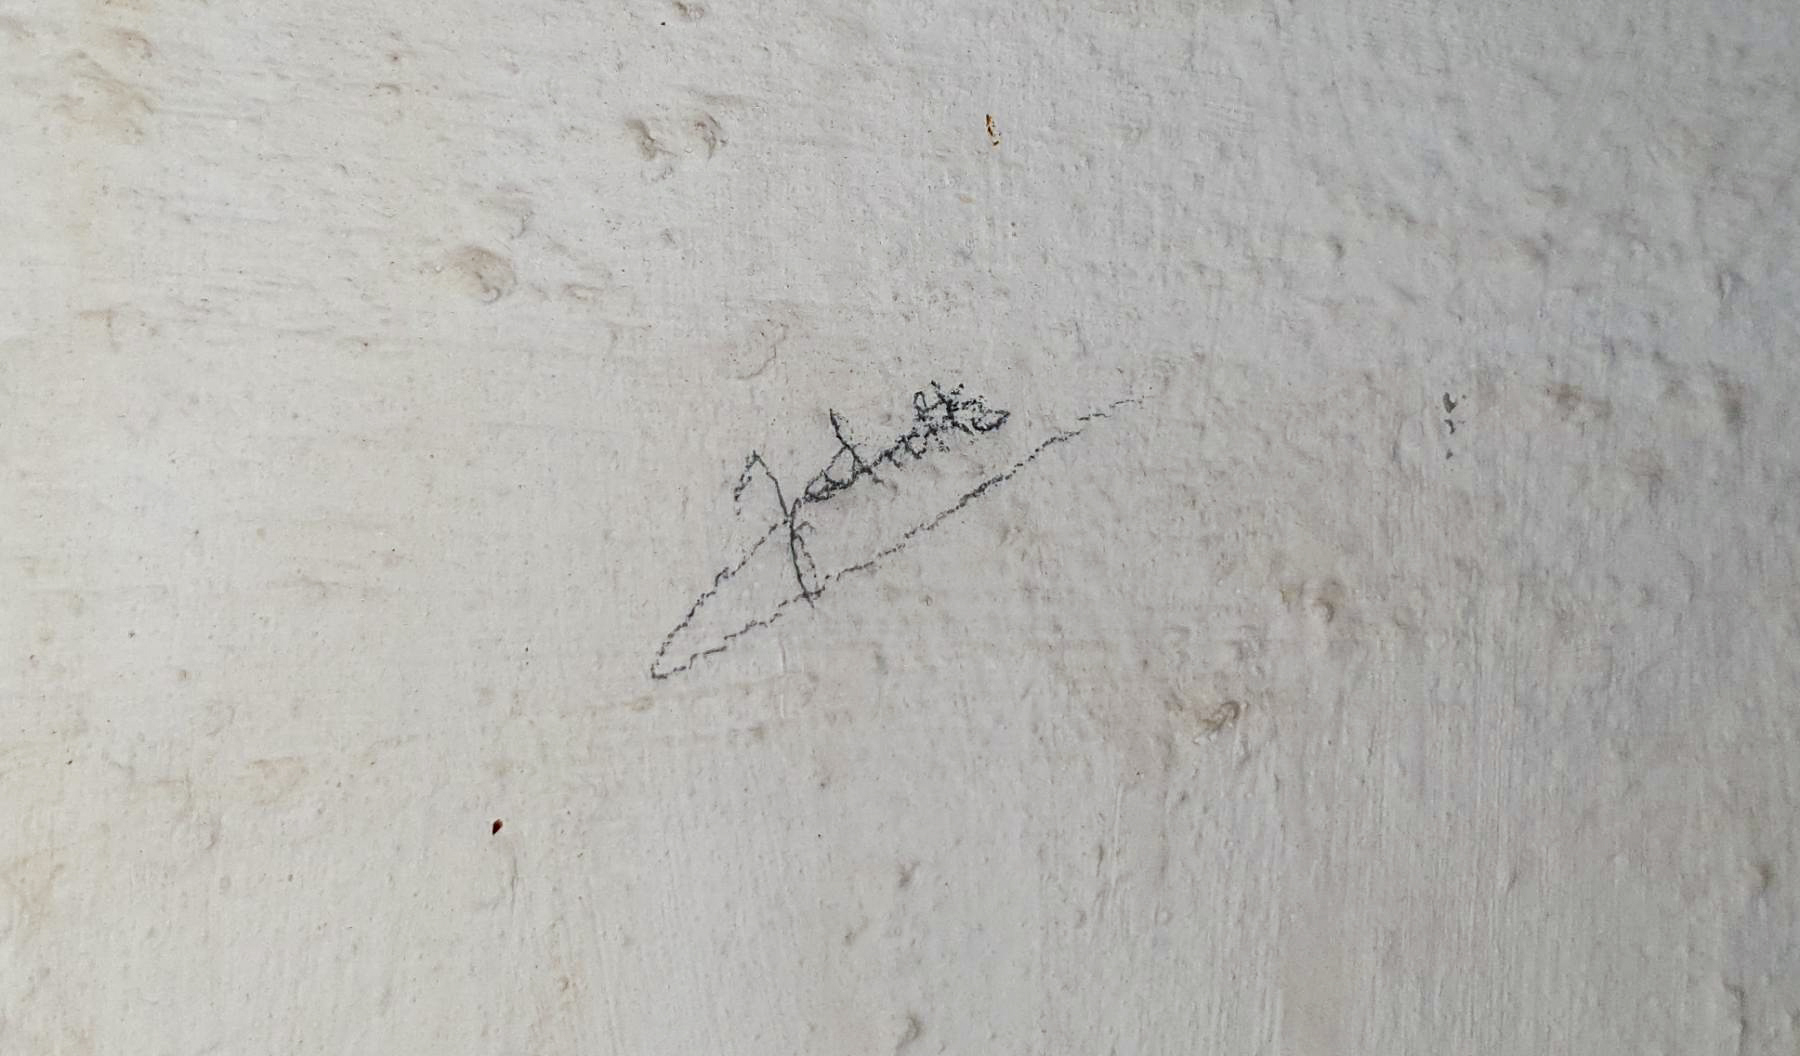 Ligne Maginot - HAUT POIRIER - (Ouvrage d'infanterie) - Bloc 1
Le nom d'une femme dans les toilettes de bloc écrit sur le mur : Juliette